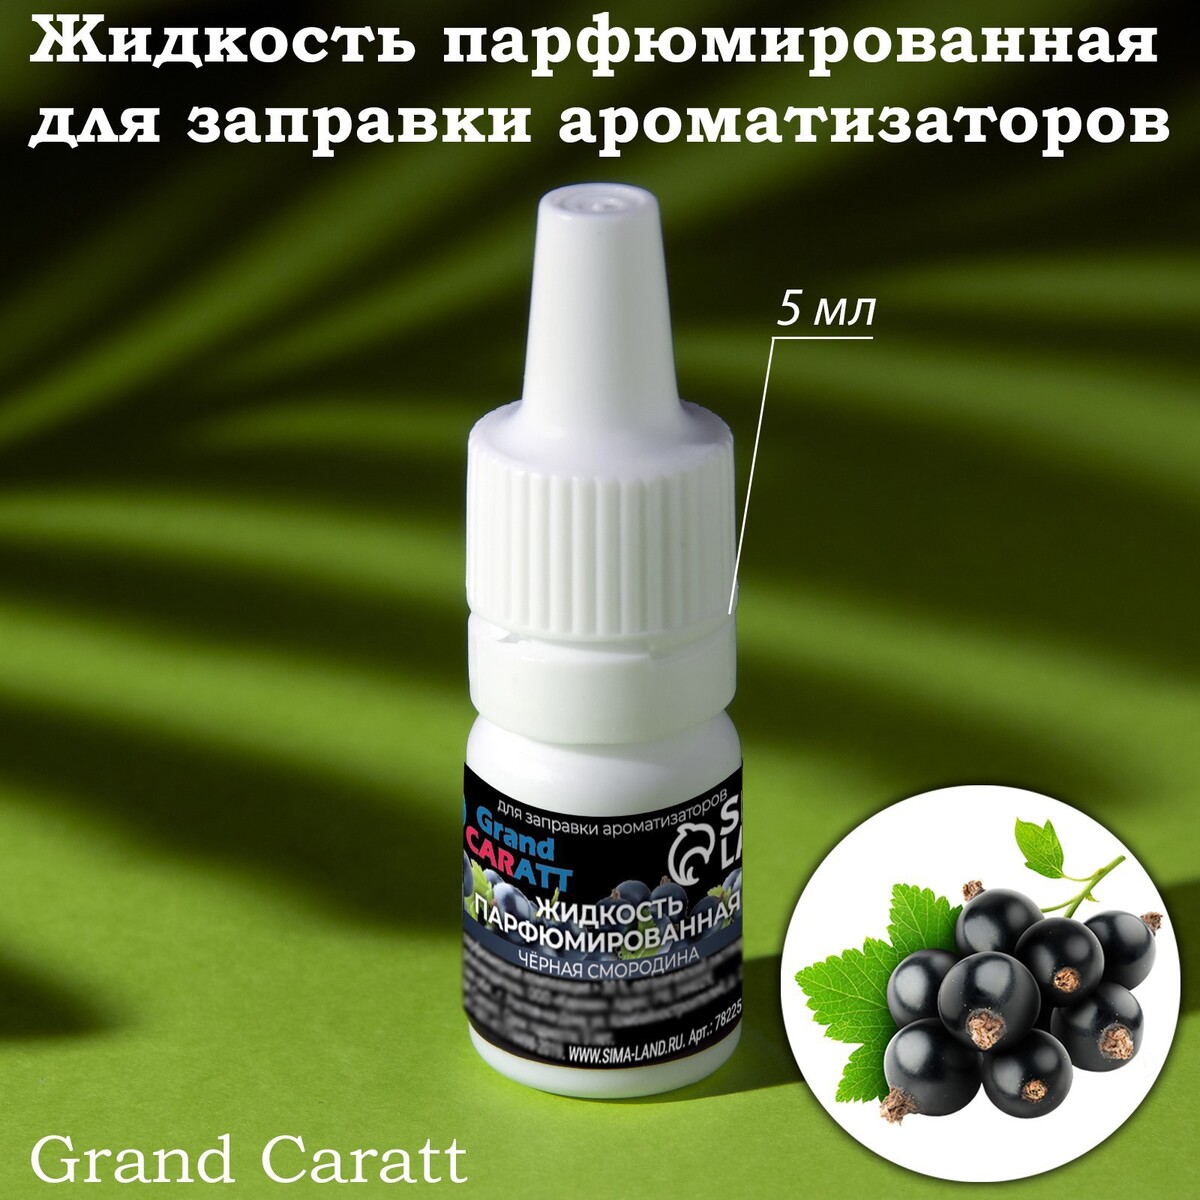 Жидкость парфюмированная grand caratt, для заправки ароматизаторов, черная смородина, 5 мл